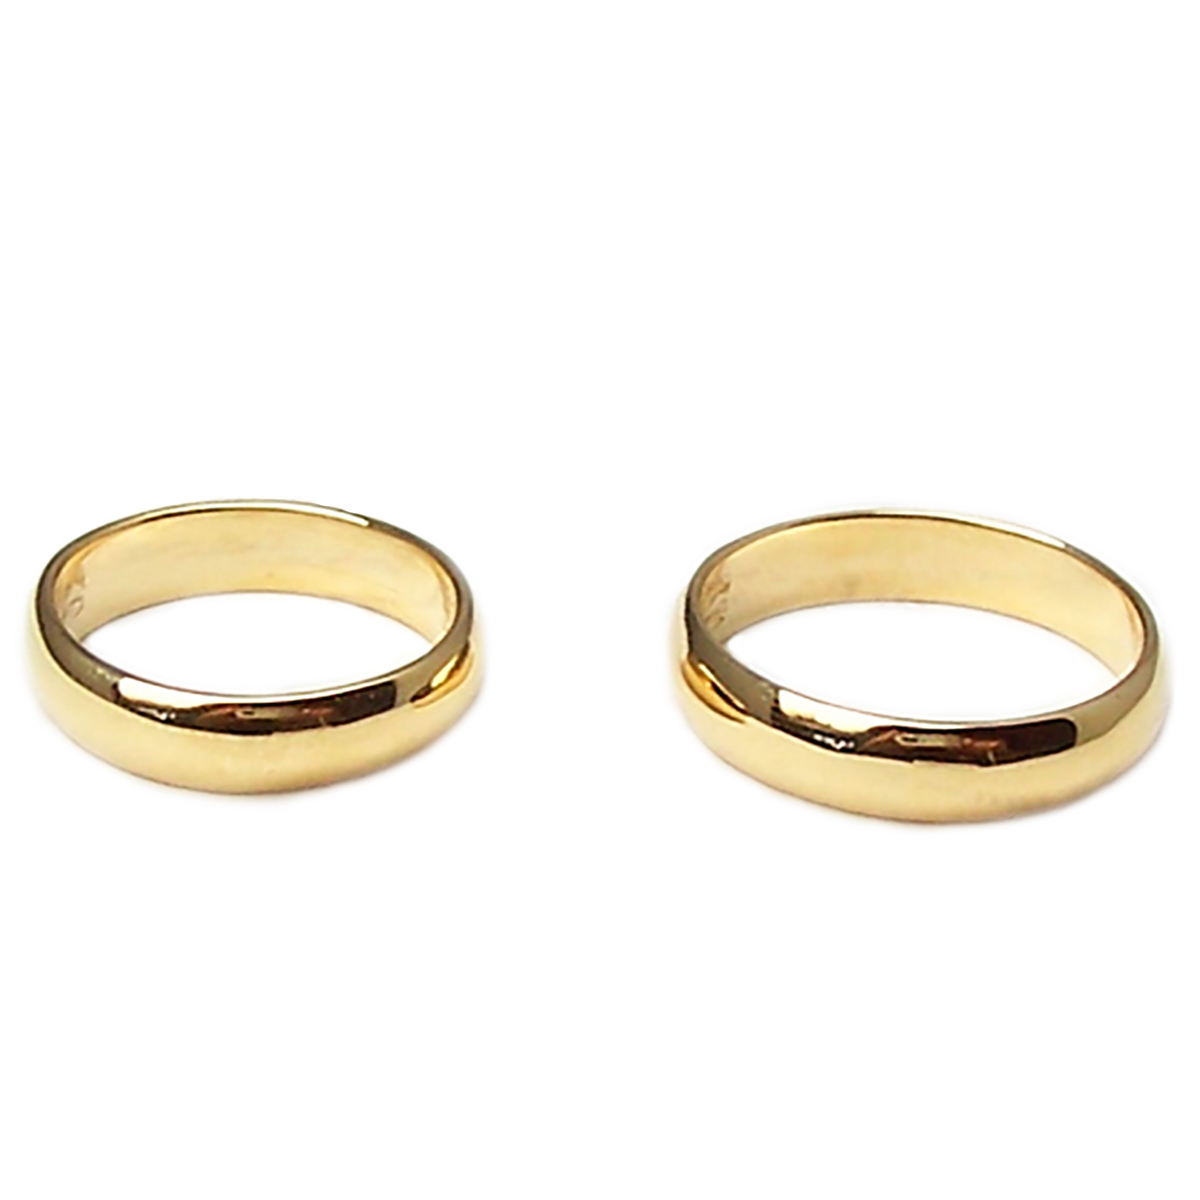 Anelli nuziali per matrimonio in oro giallo o bianco 5 mm fedi anello coppia 2 p